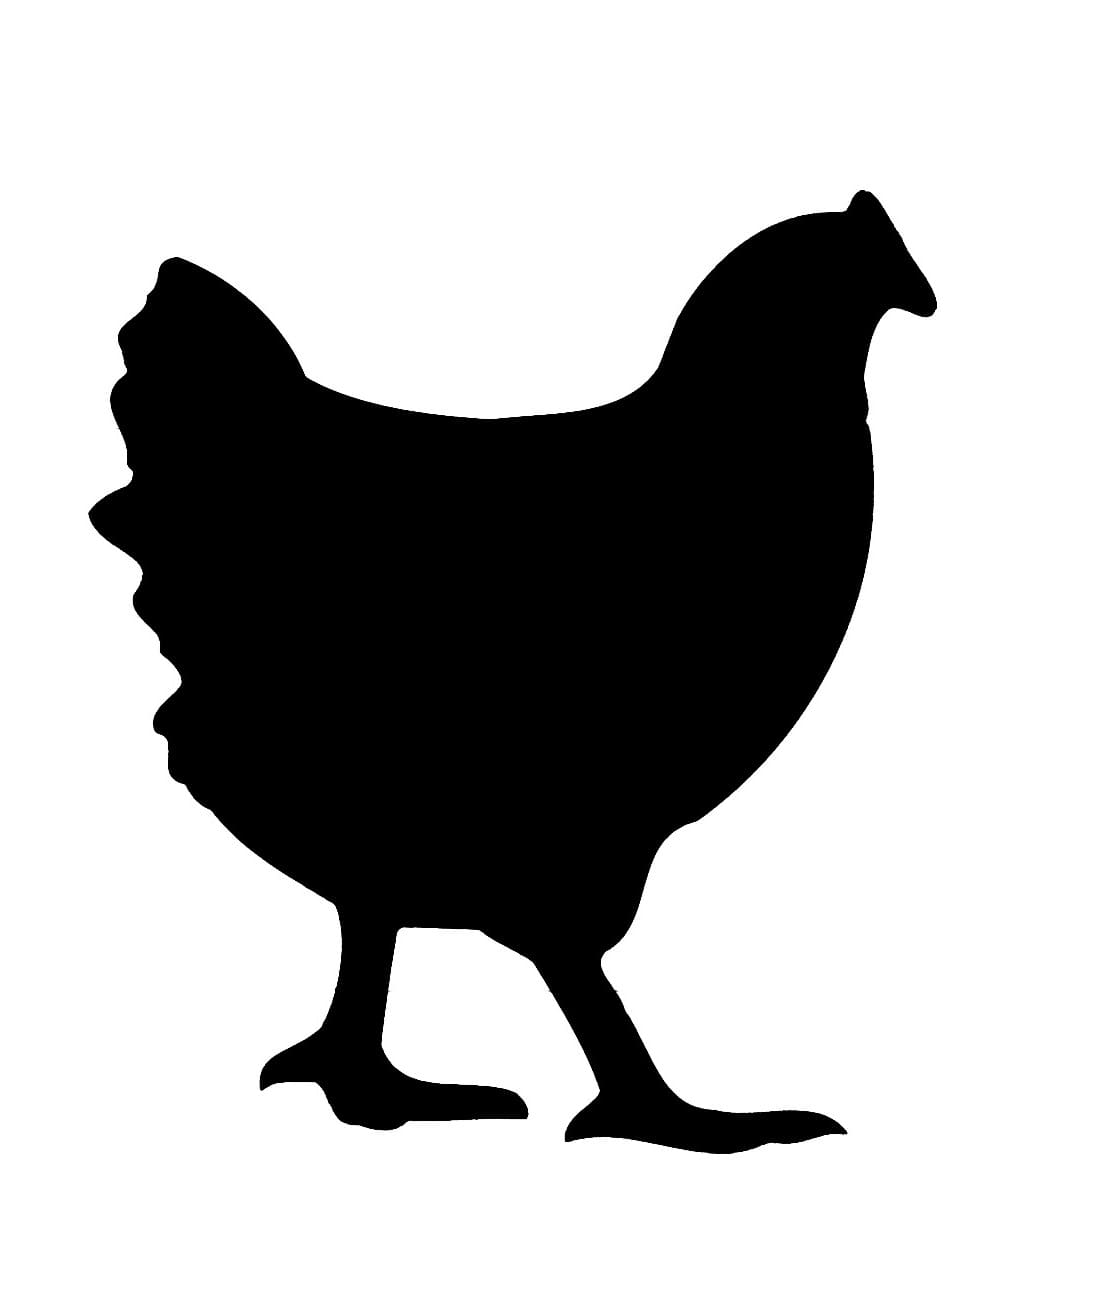 Chicken Stencil Free Photo